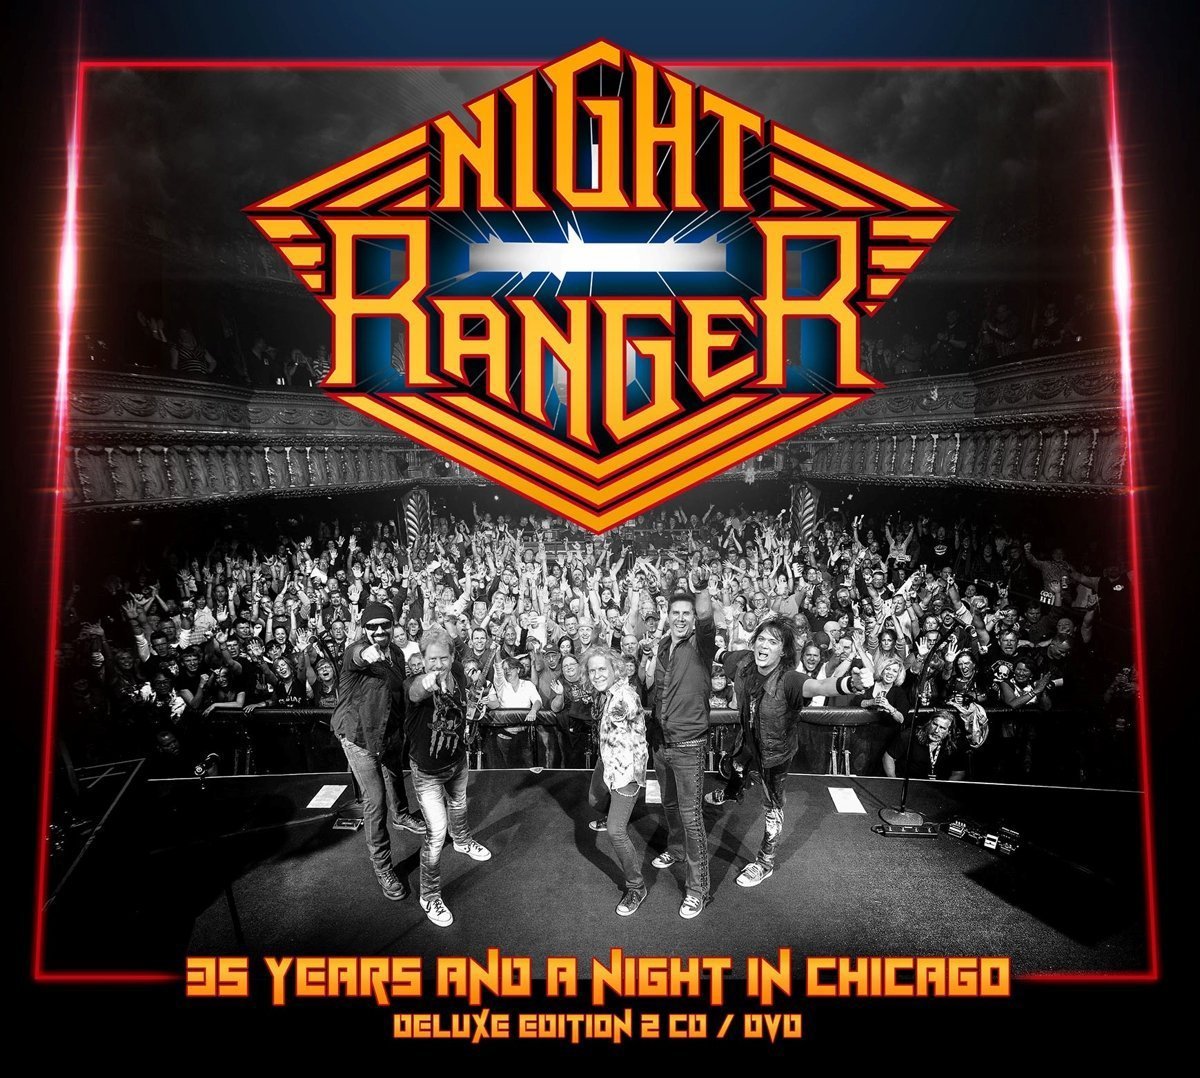 Night Ranger – Live Cover